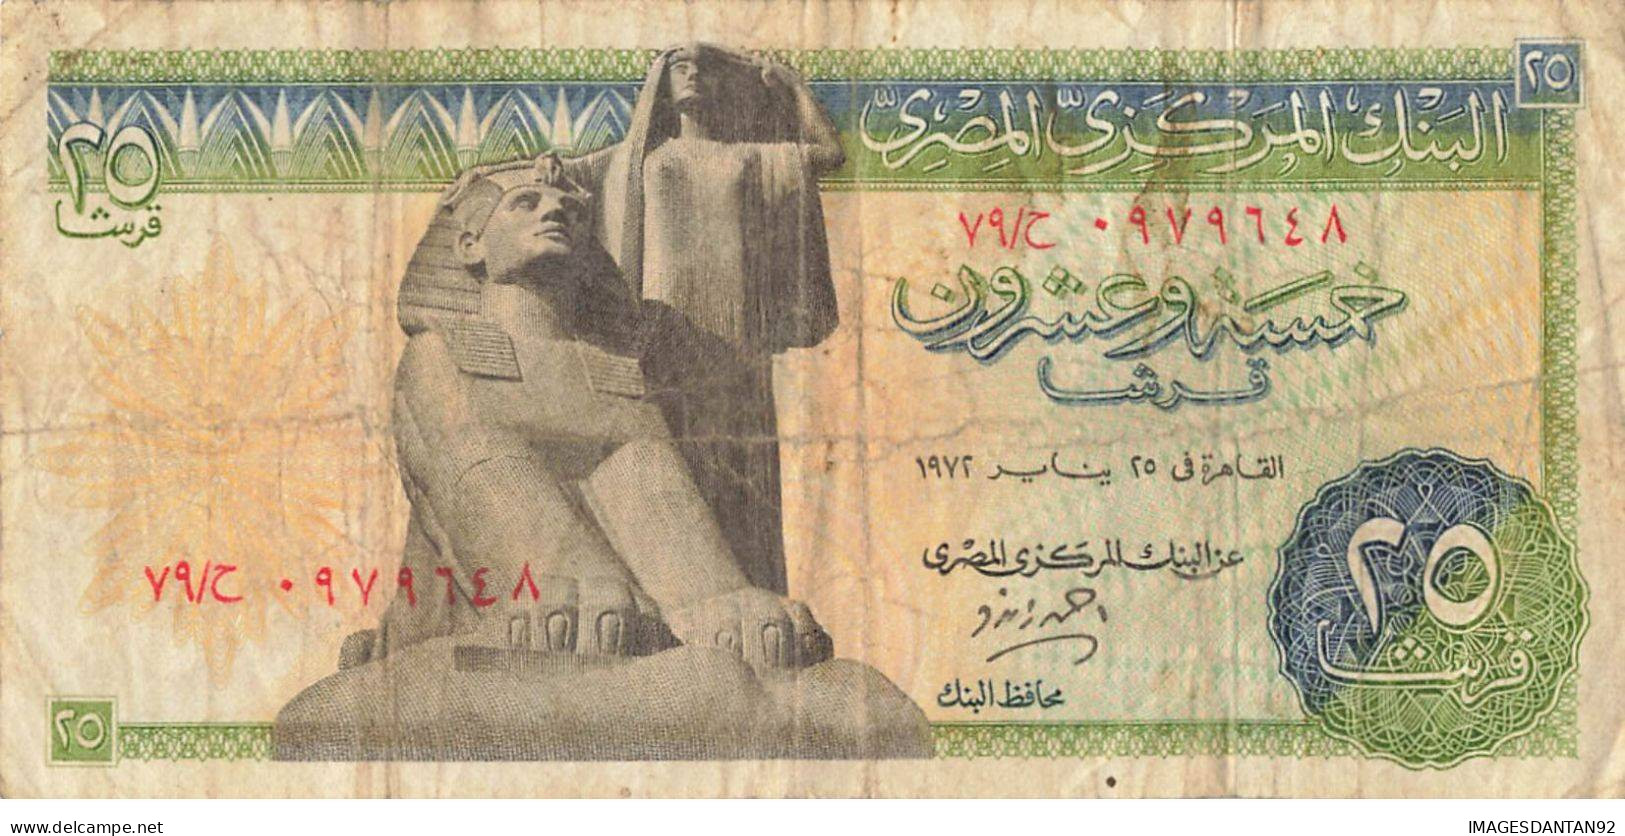 EGYPTE EGYPT 17 BANK NOTE PIASTRE POUND - Egipto